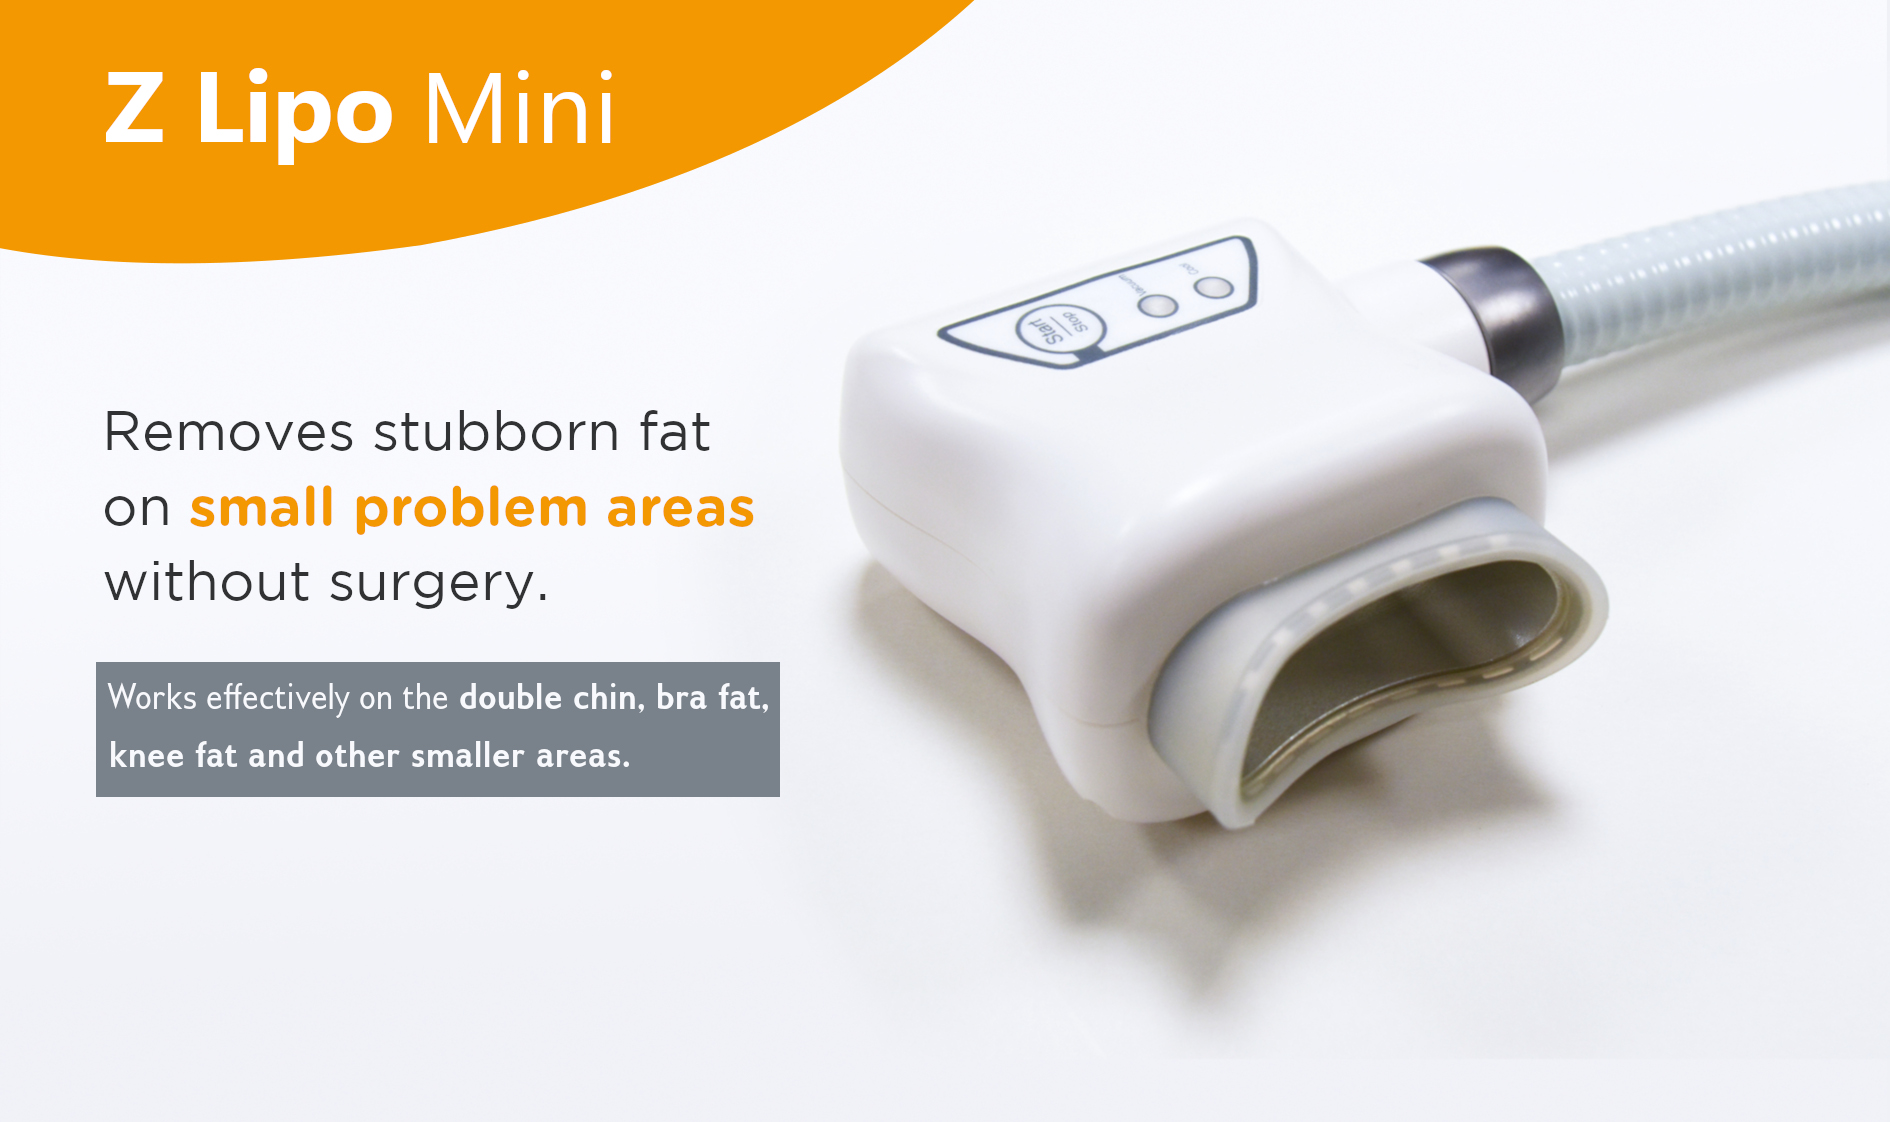 Explore the Z Lipo Mini for Smaller Fat Areas